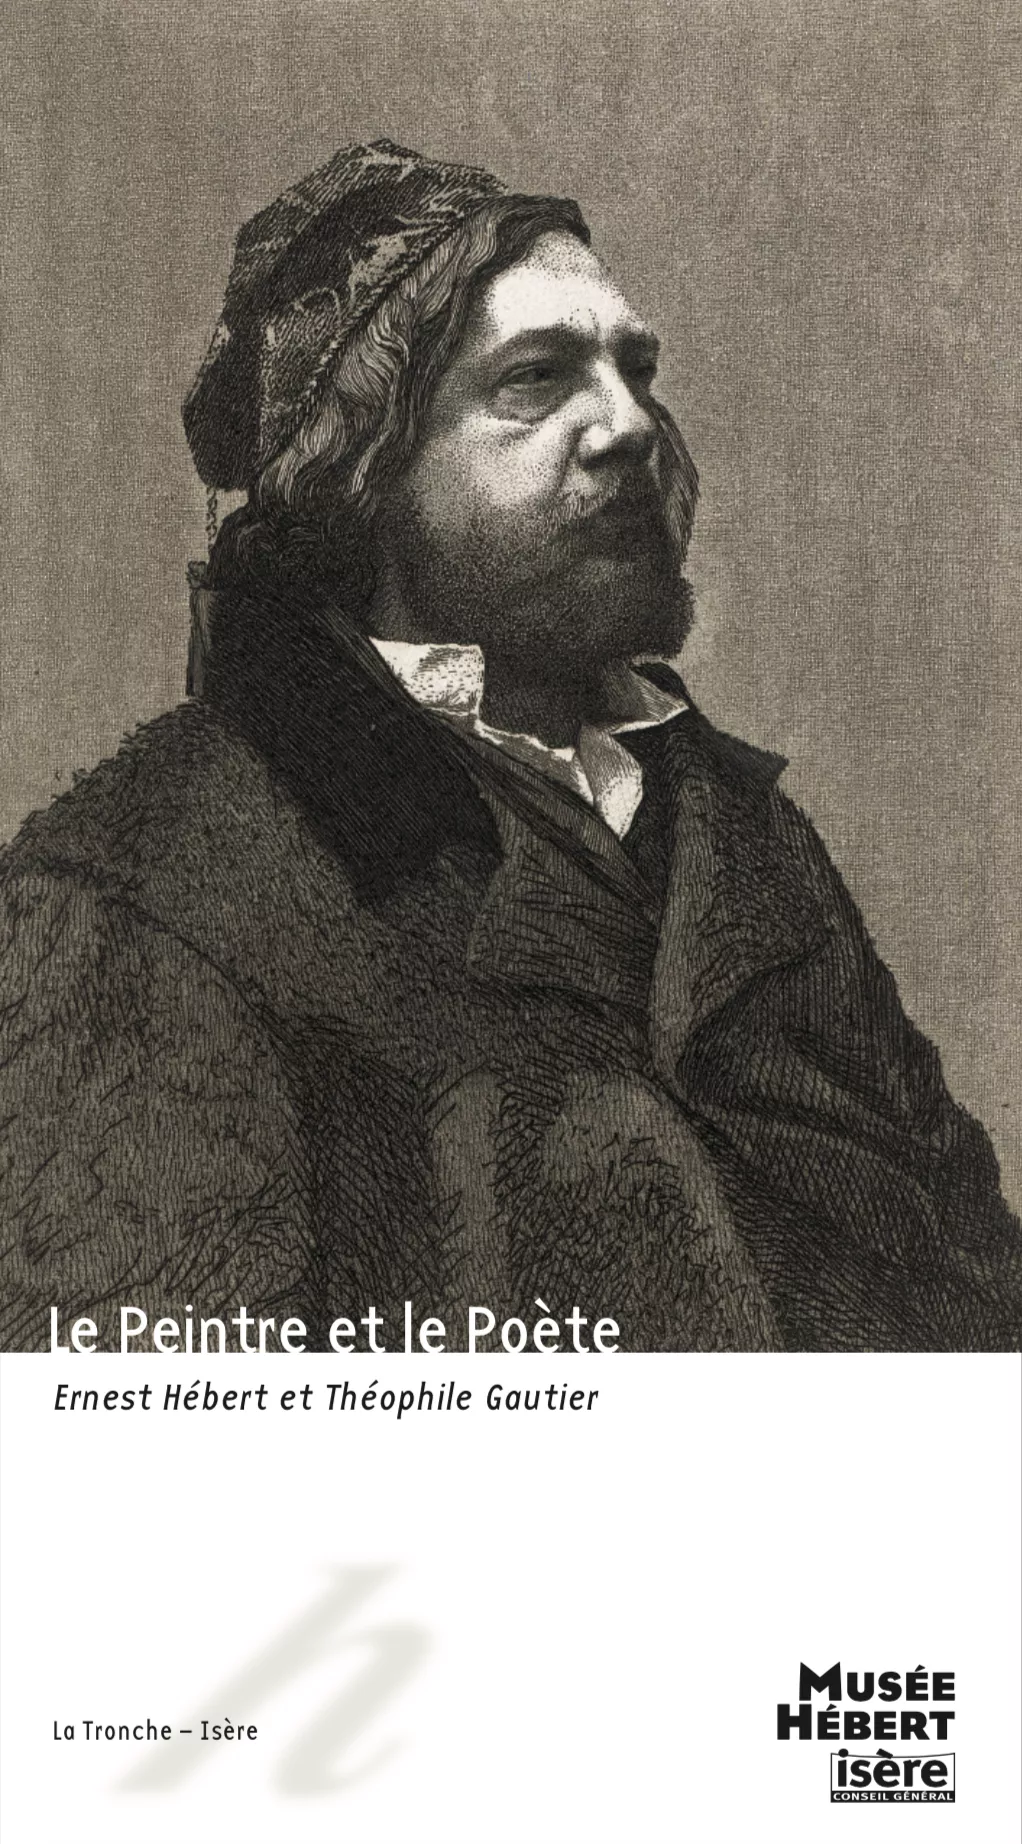 Ernest Hébert et Théophile Gautier. Le peintre et le poète